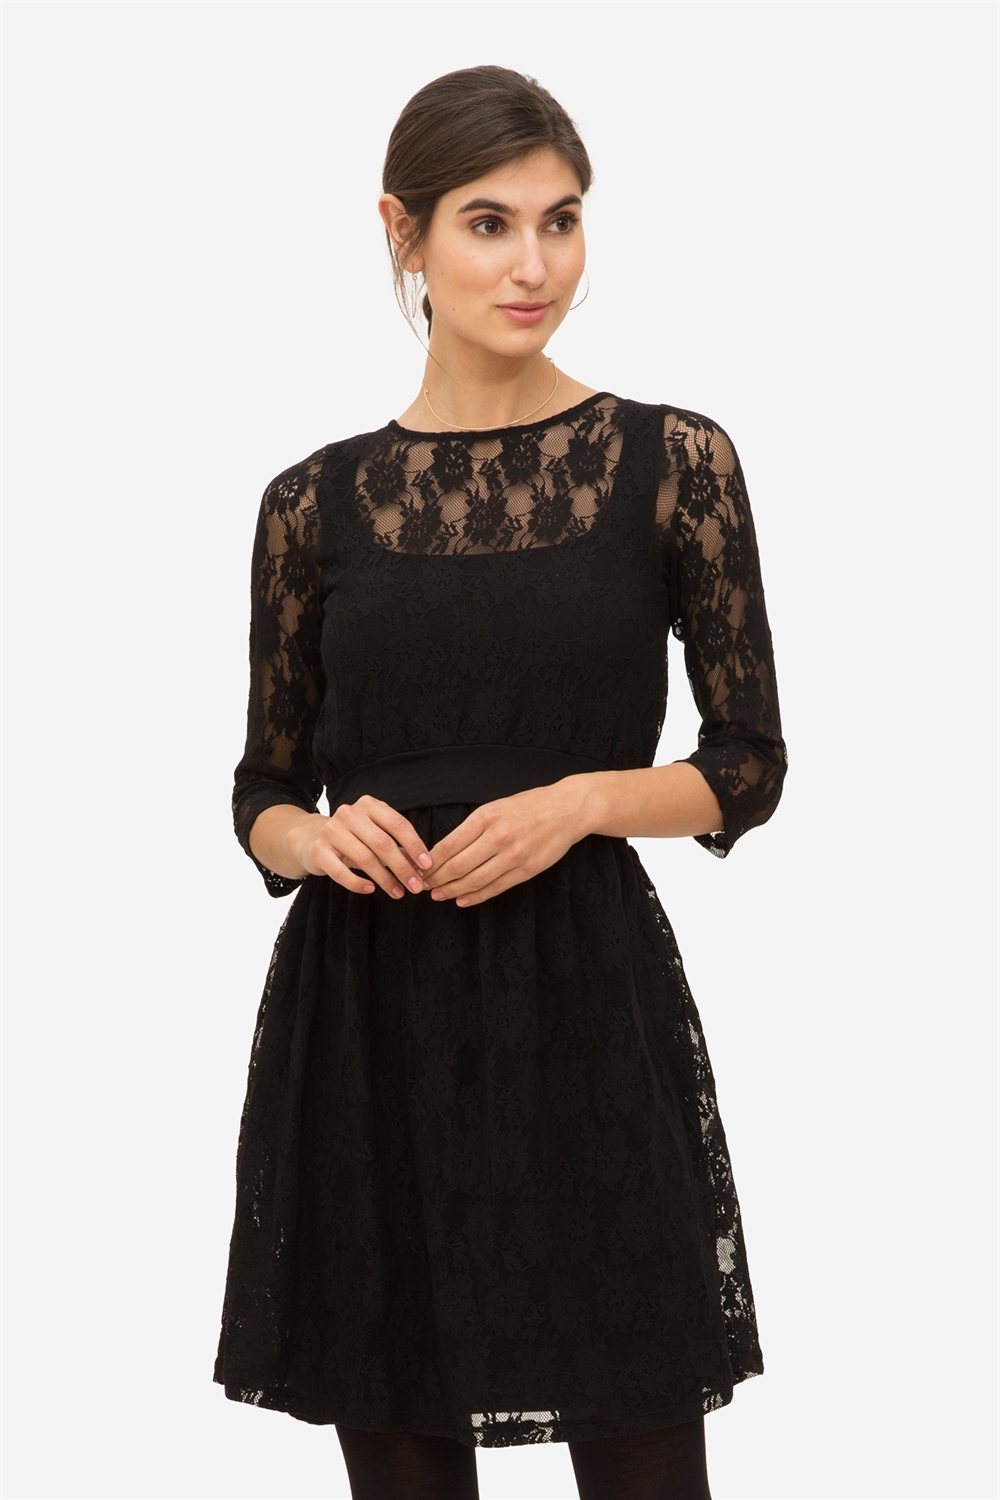 Black Lace nursing dress | Buy Nursing clothes online